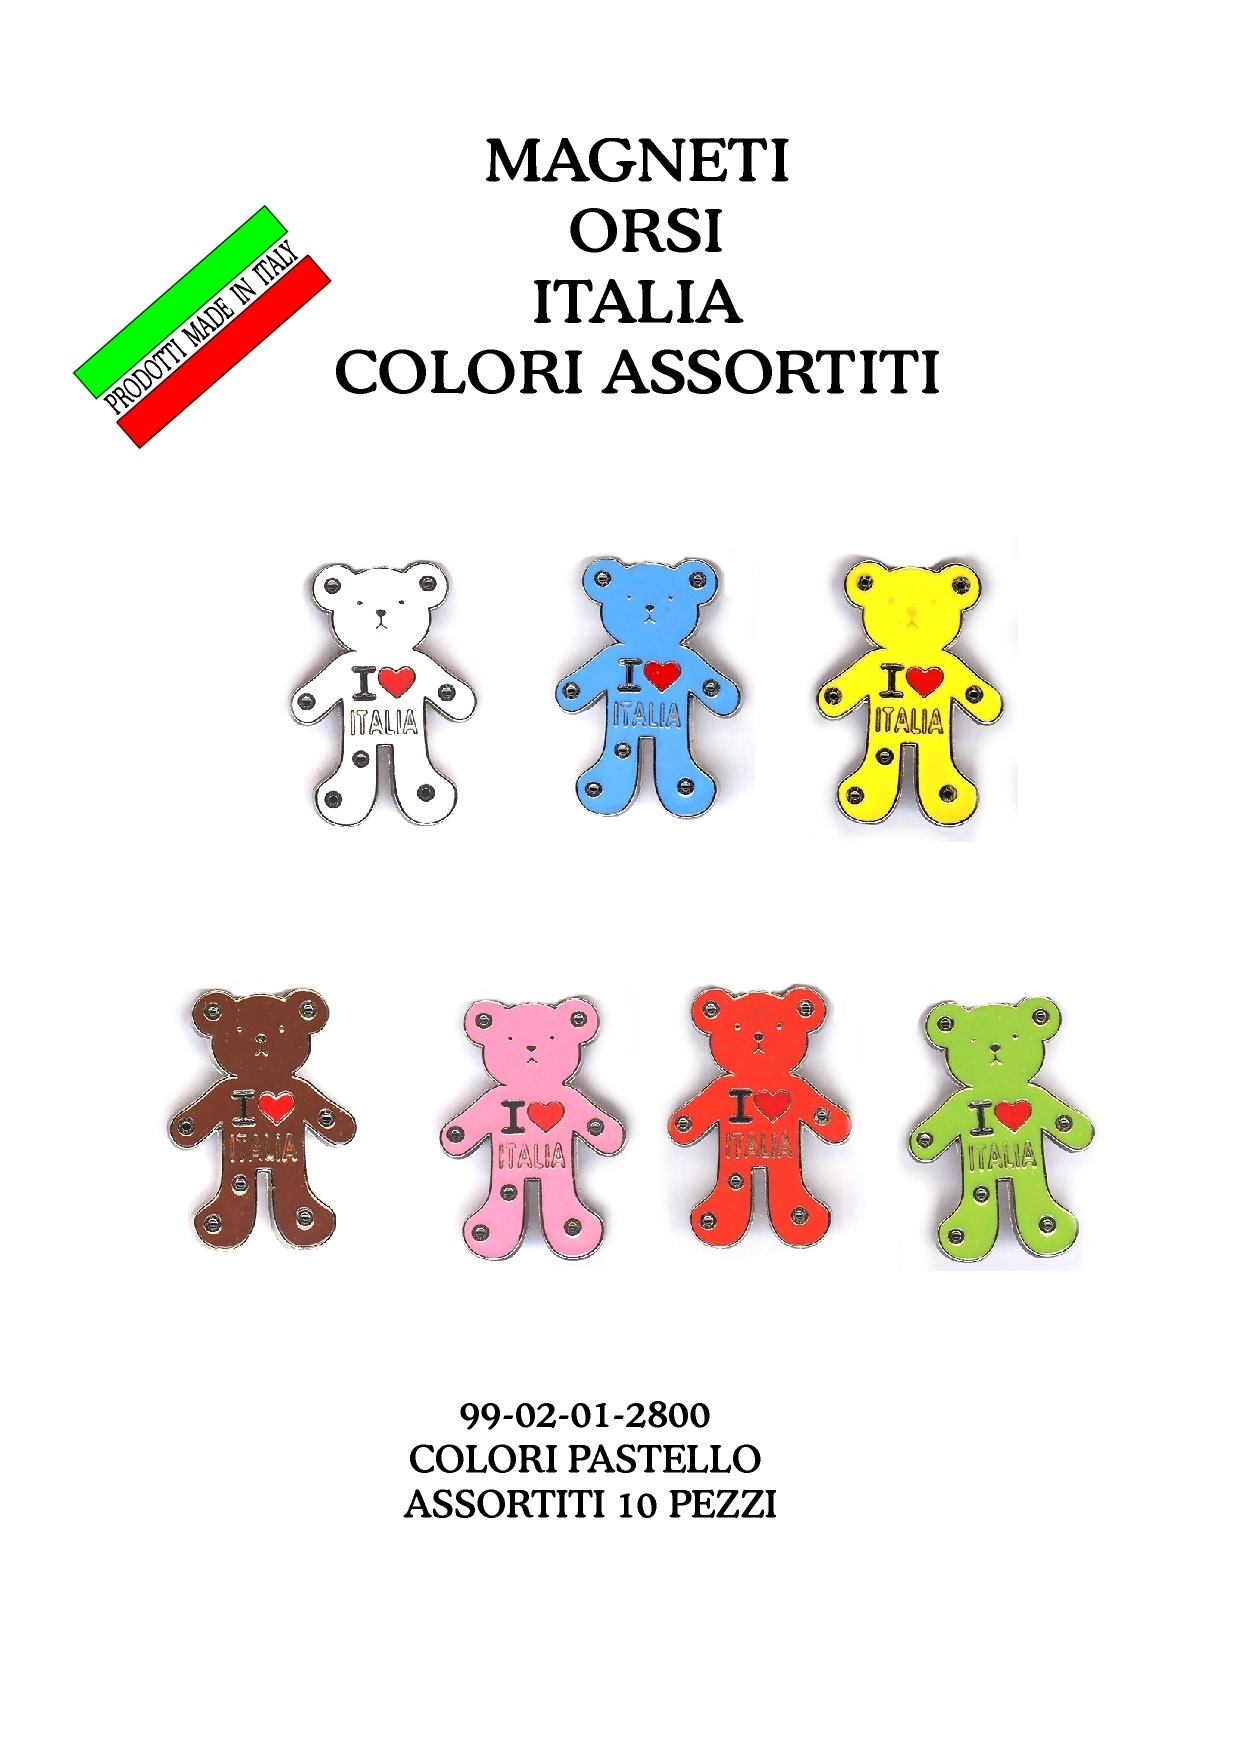 99-02-01-2800 Magneti orsi "ITALIA" colori assortiti CONFEZIONI da n.10 Pz.